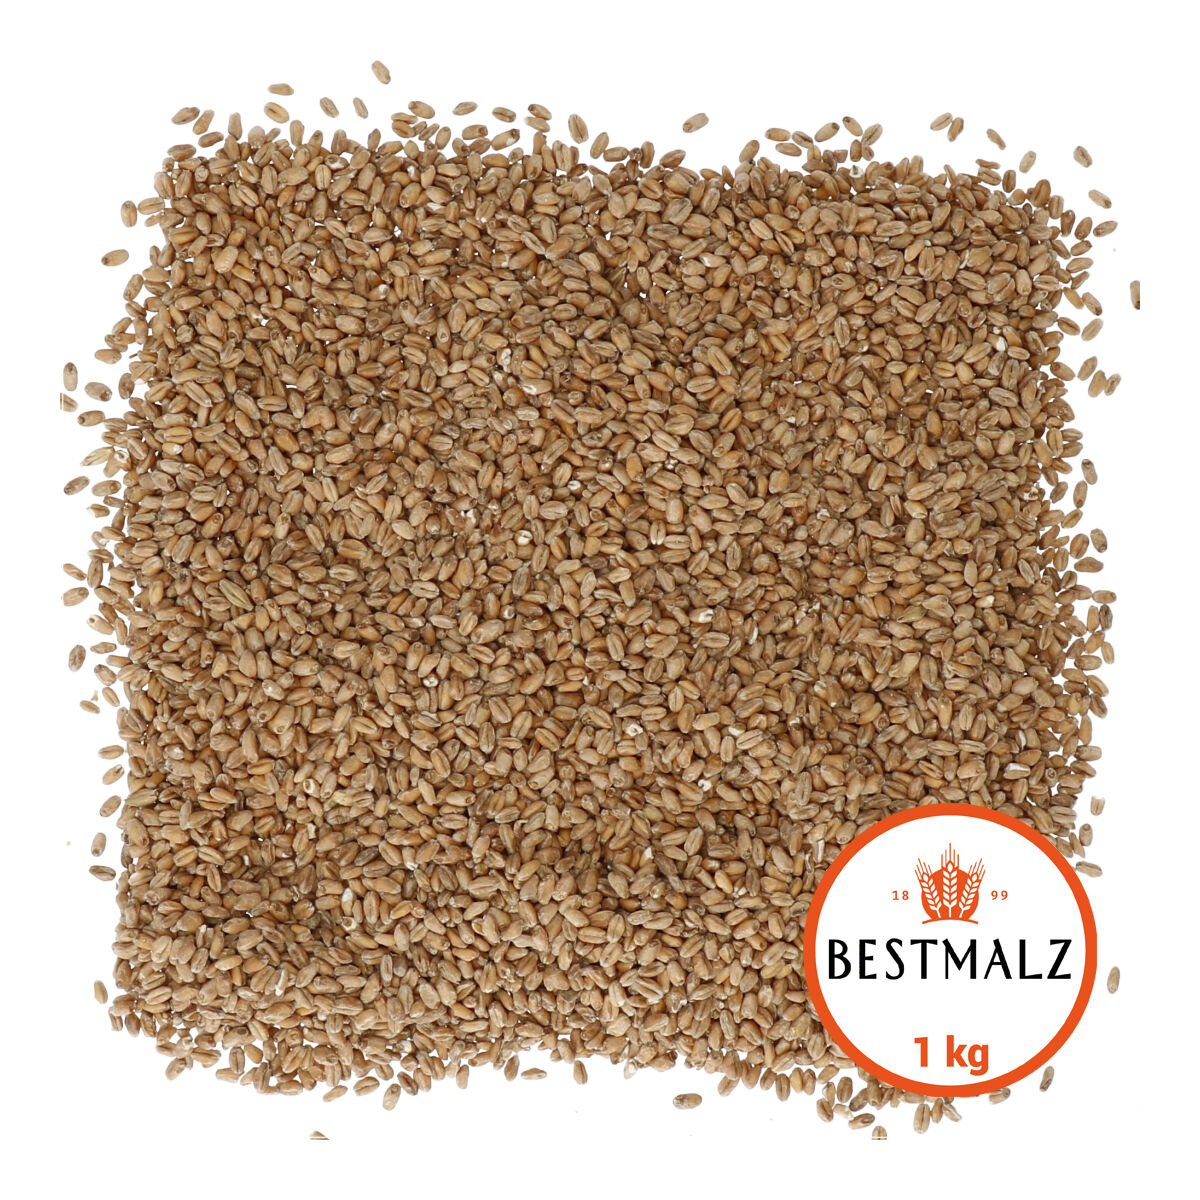 Bestmalz Wheat 1 kg